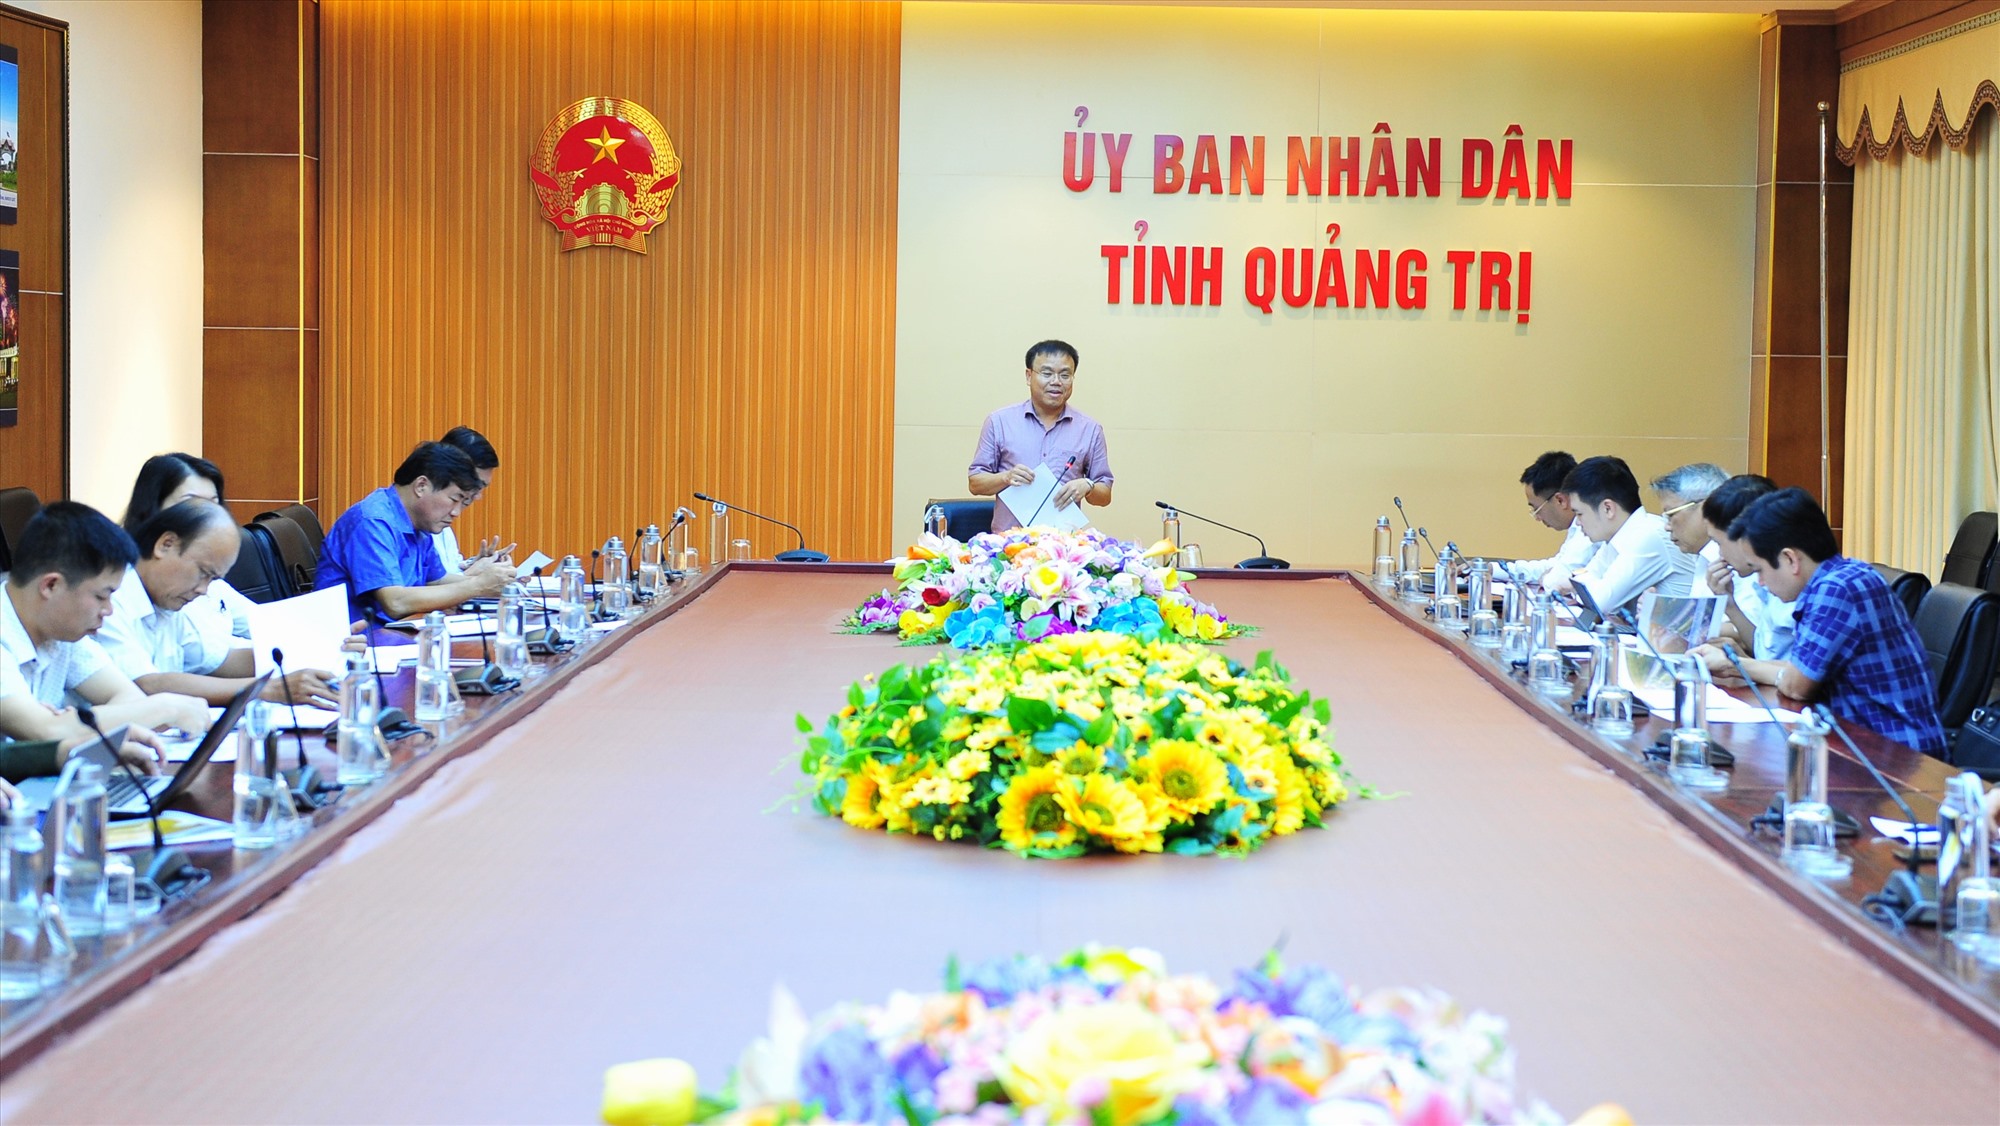 Phó Chủ tịch UBND tỉnh Lê Đức Tiến phát biểu tại buổi làm việc - Ảnh: Trần Tuyền